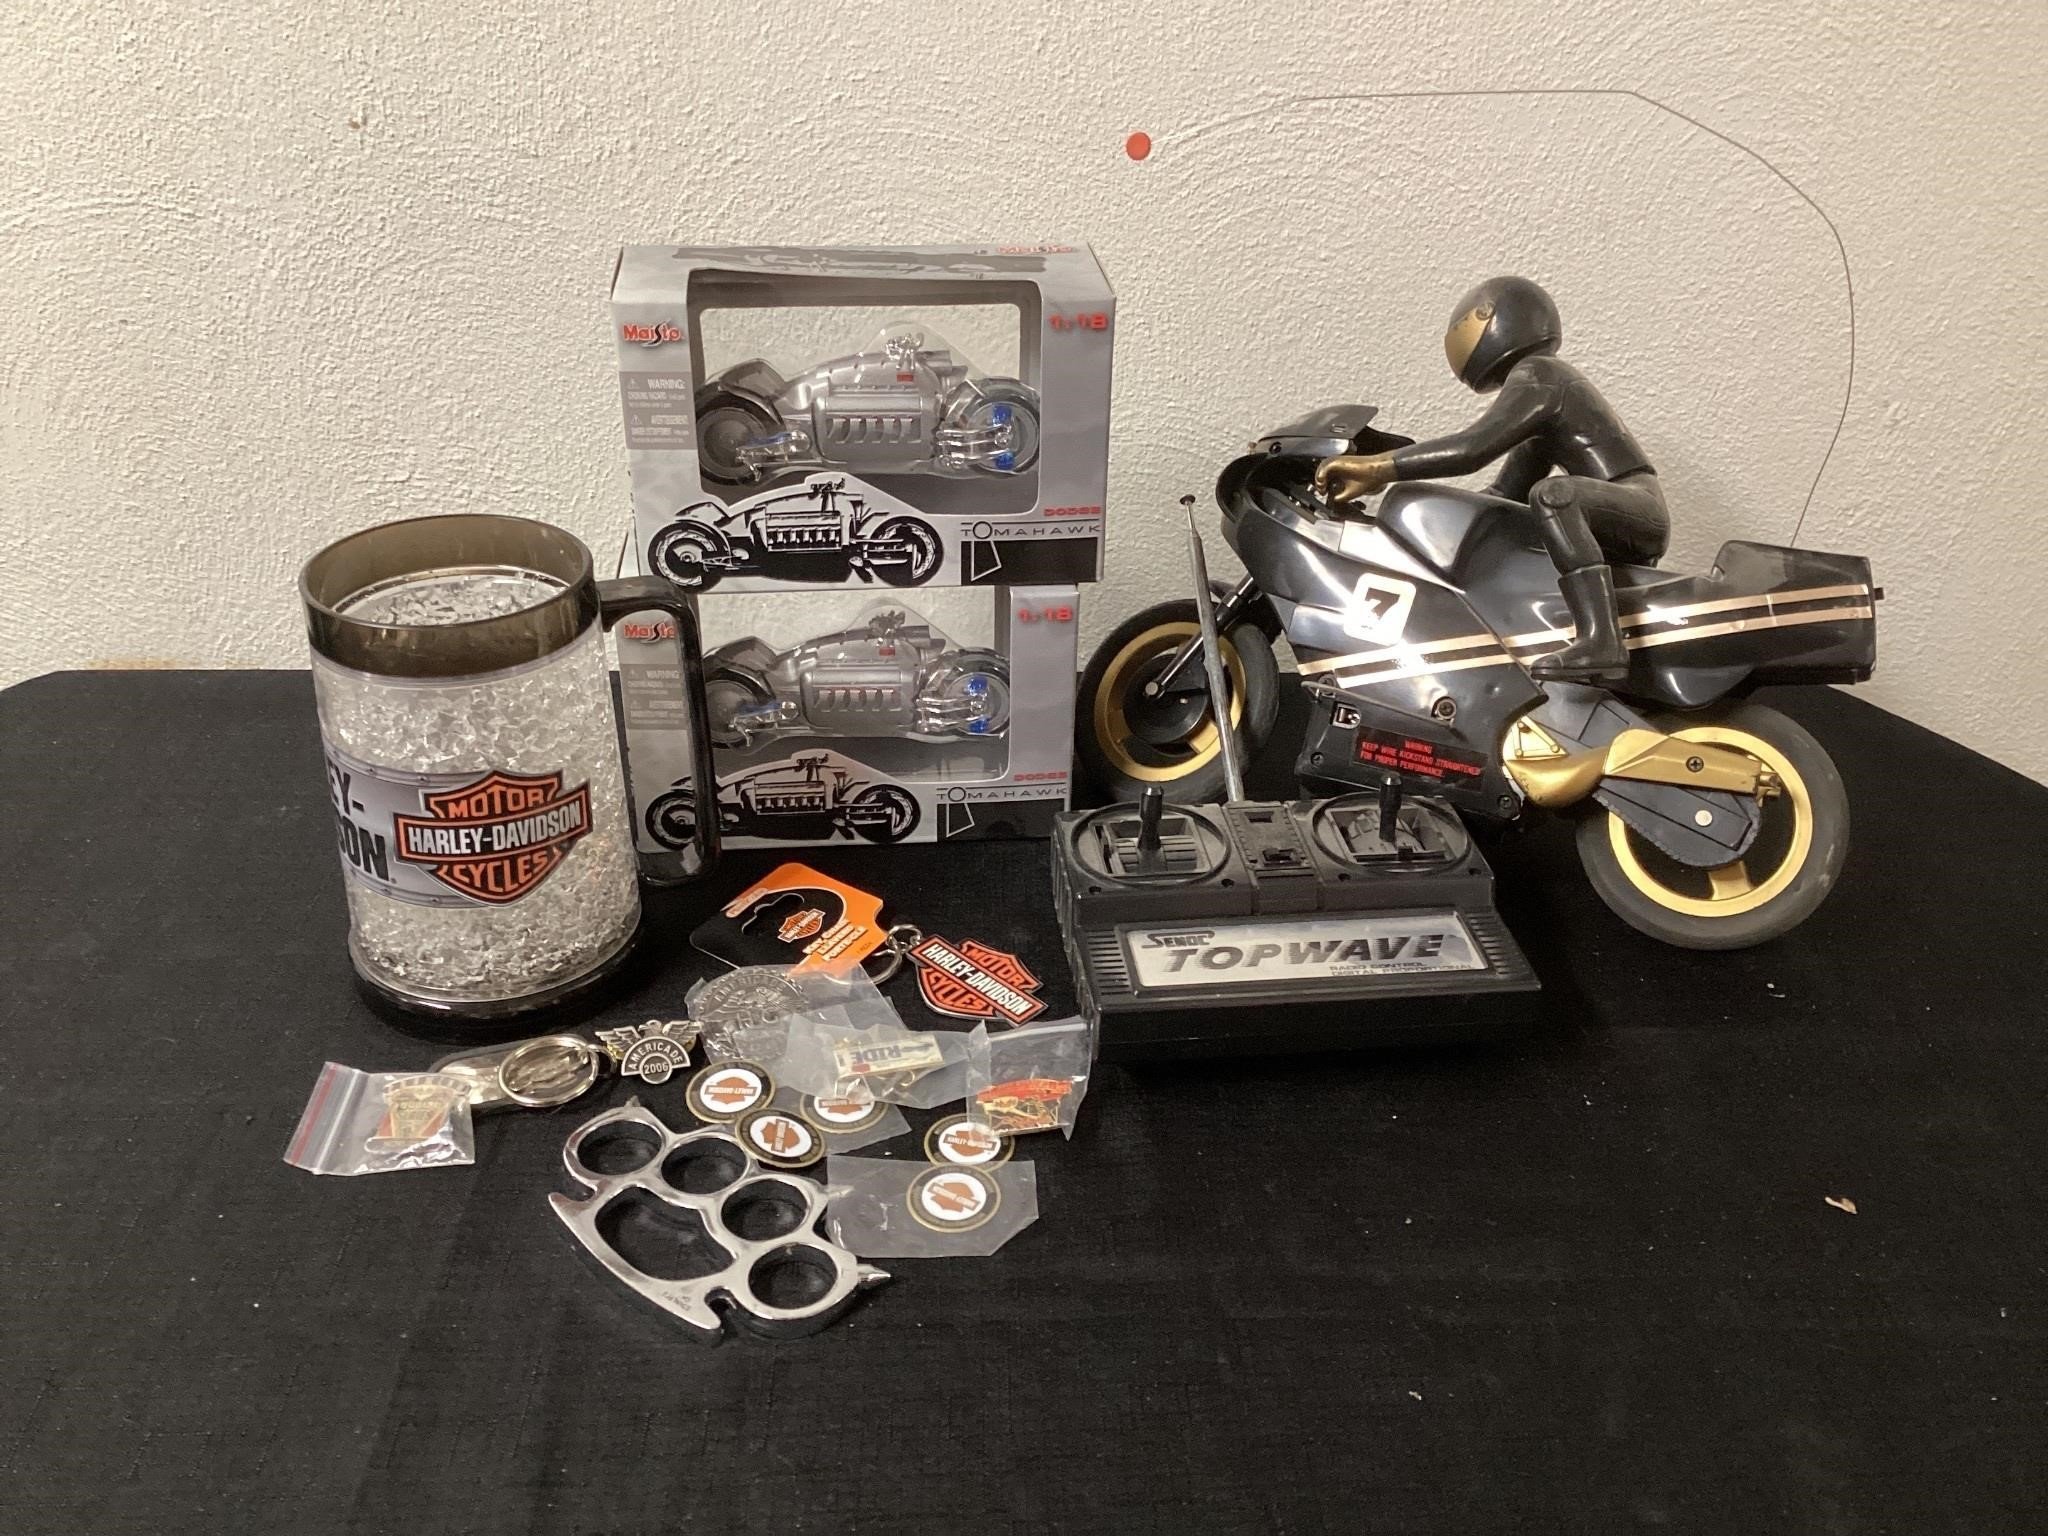 Harley Davidson memorabilia and remote motorcycle